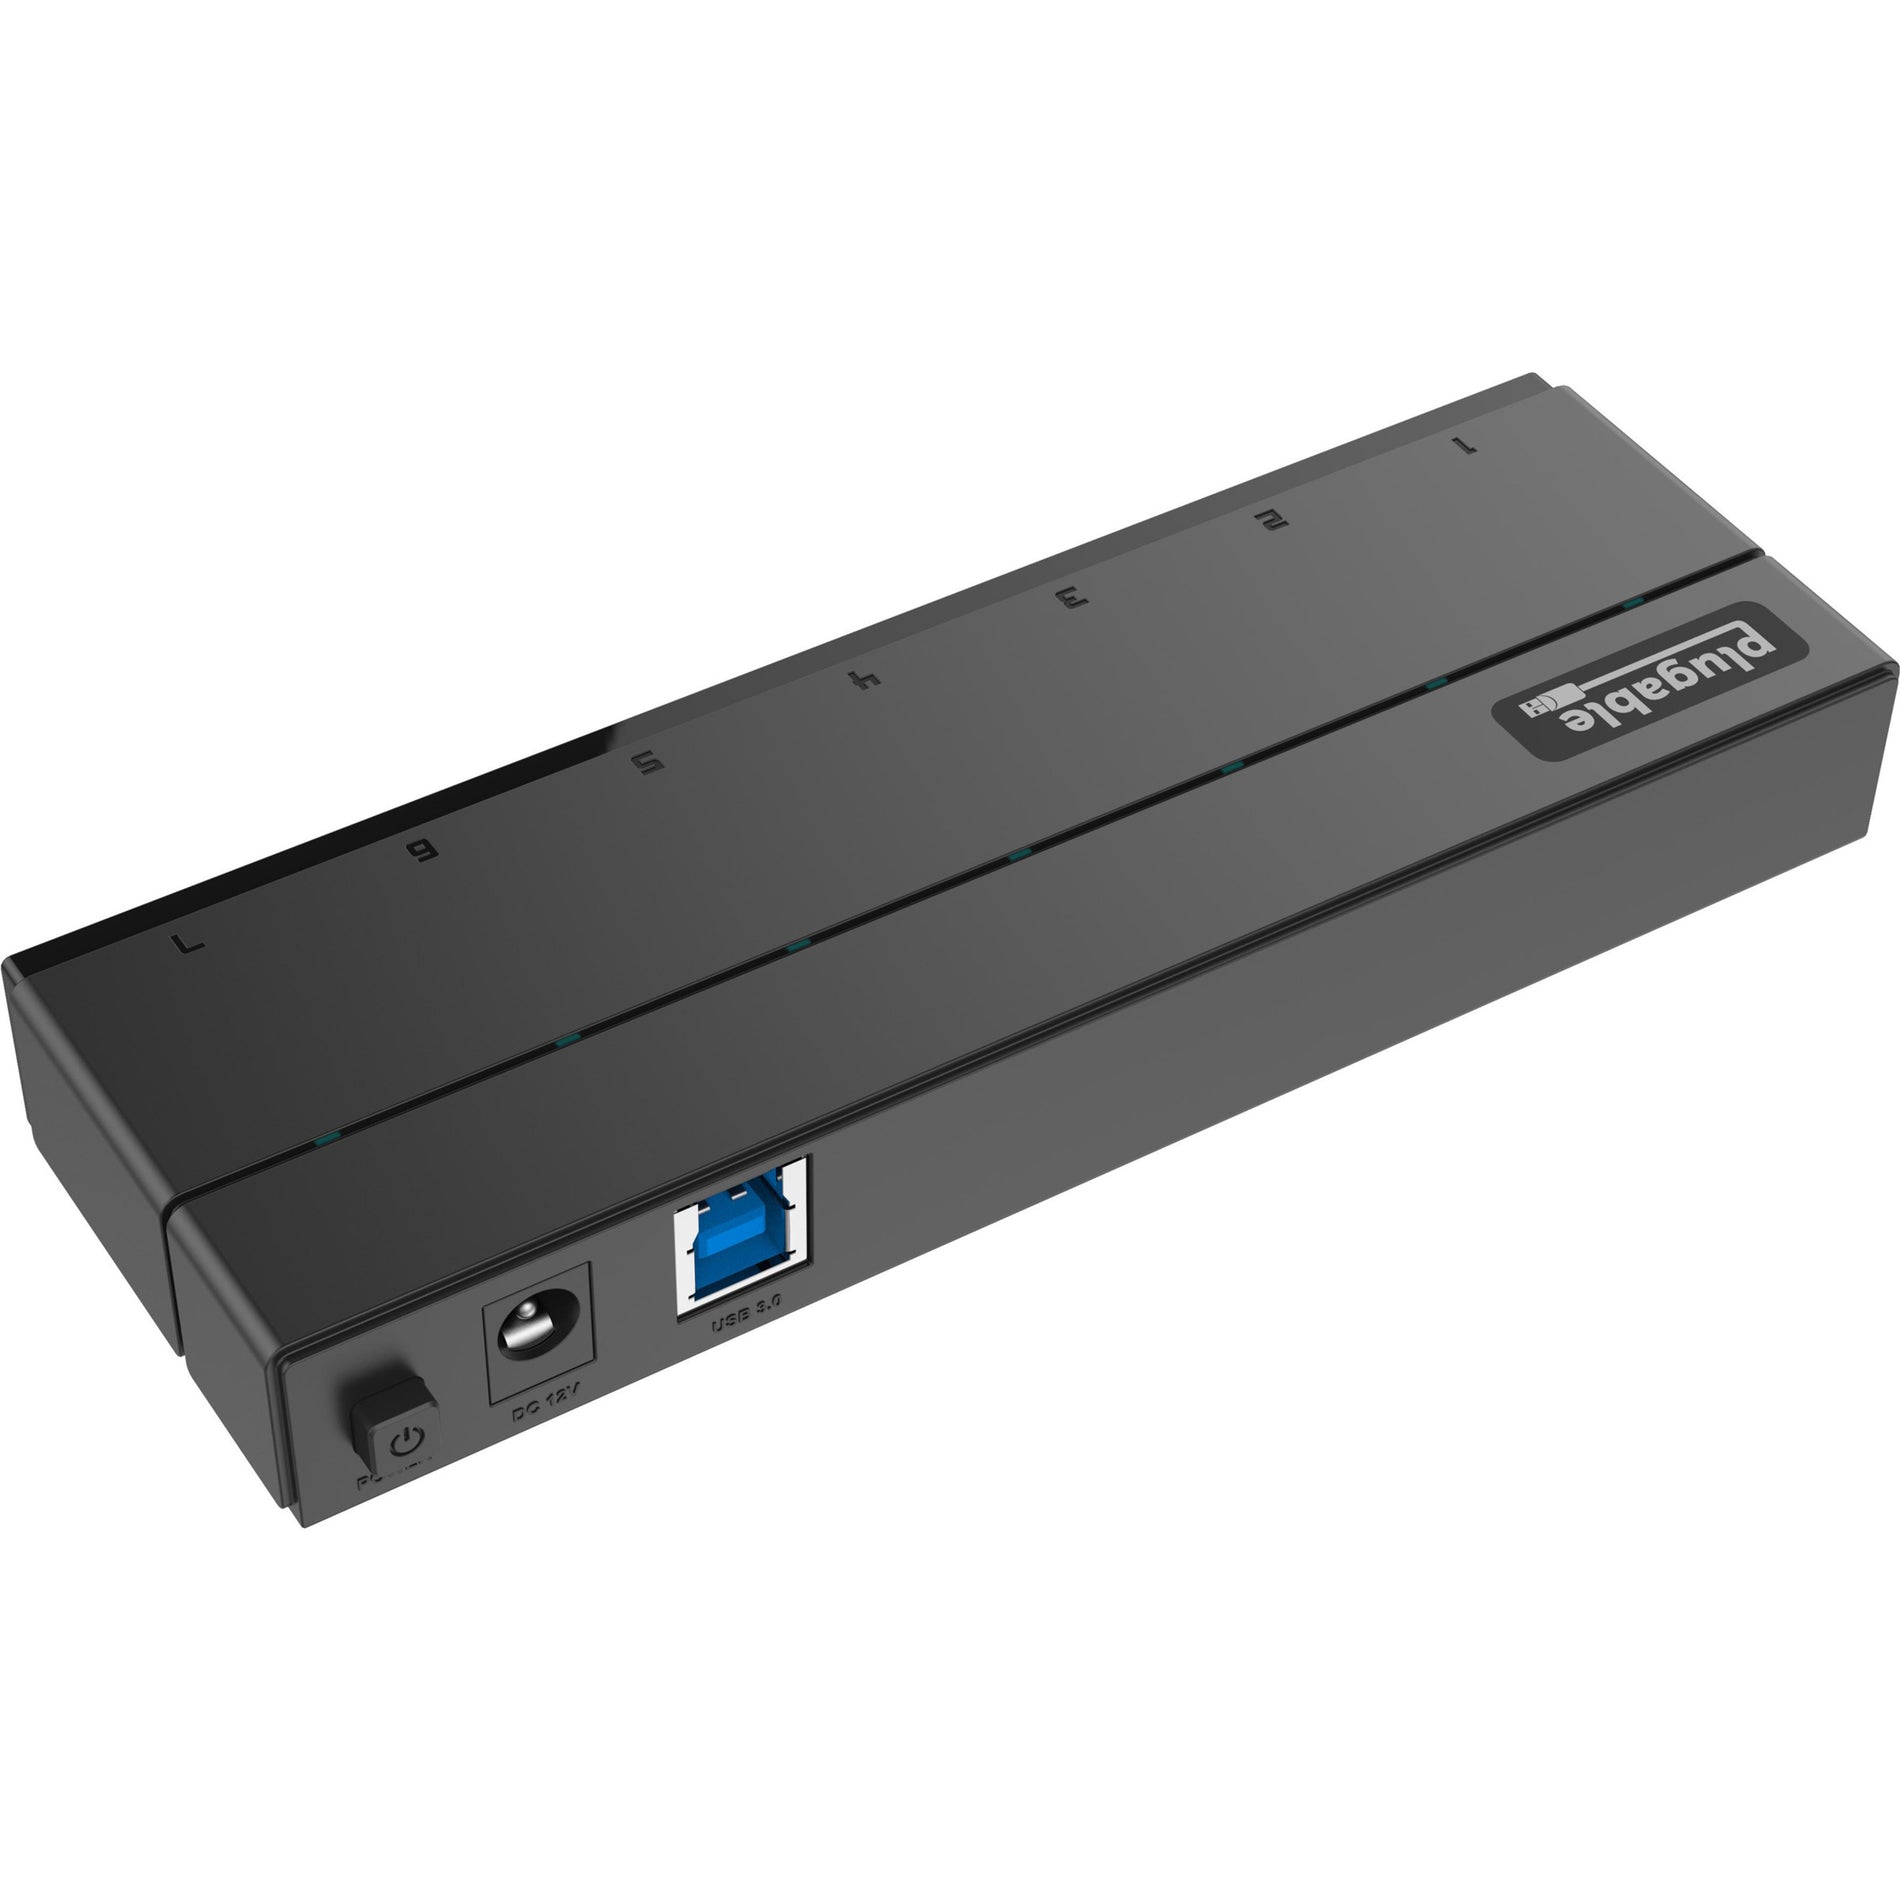 Marca: Plugable USB3-HUB7C USB 3.0 7-Port Hub con Adaptador de Corriente de 36W Expanda su Conectividad USB